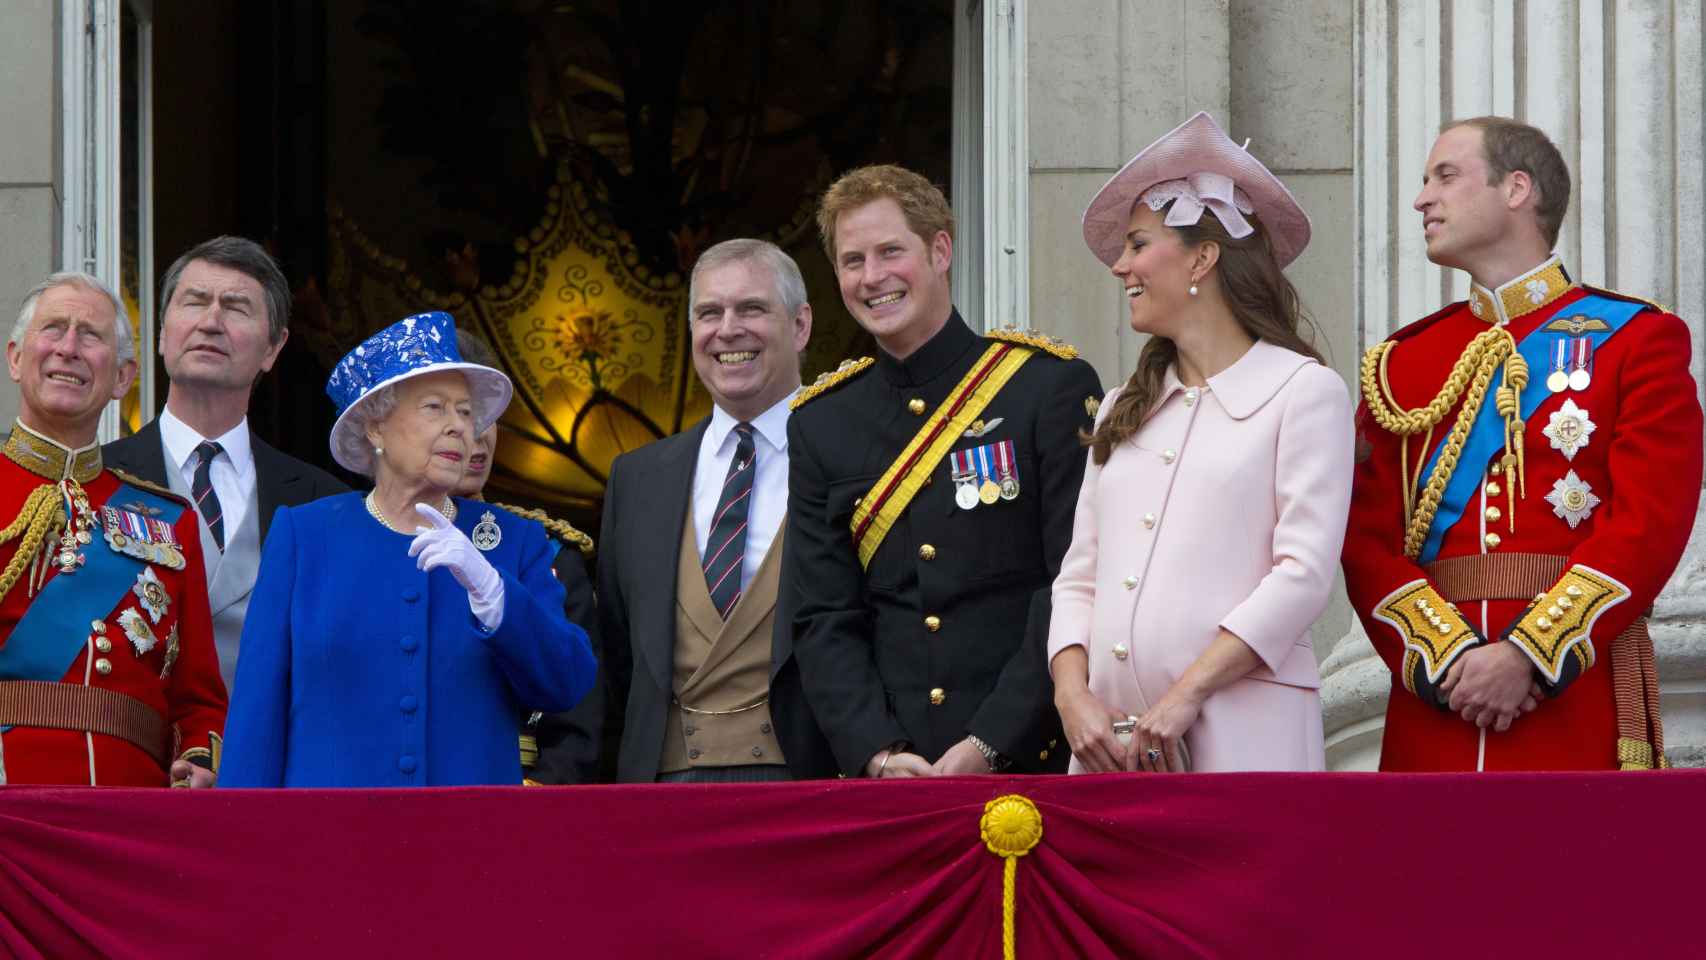 La Familia Real en el balcón del palacio de Buckingham en 2013.